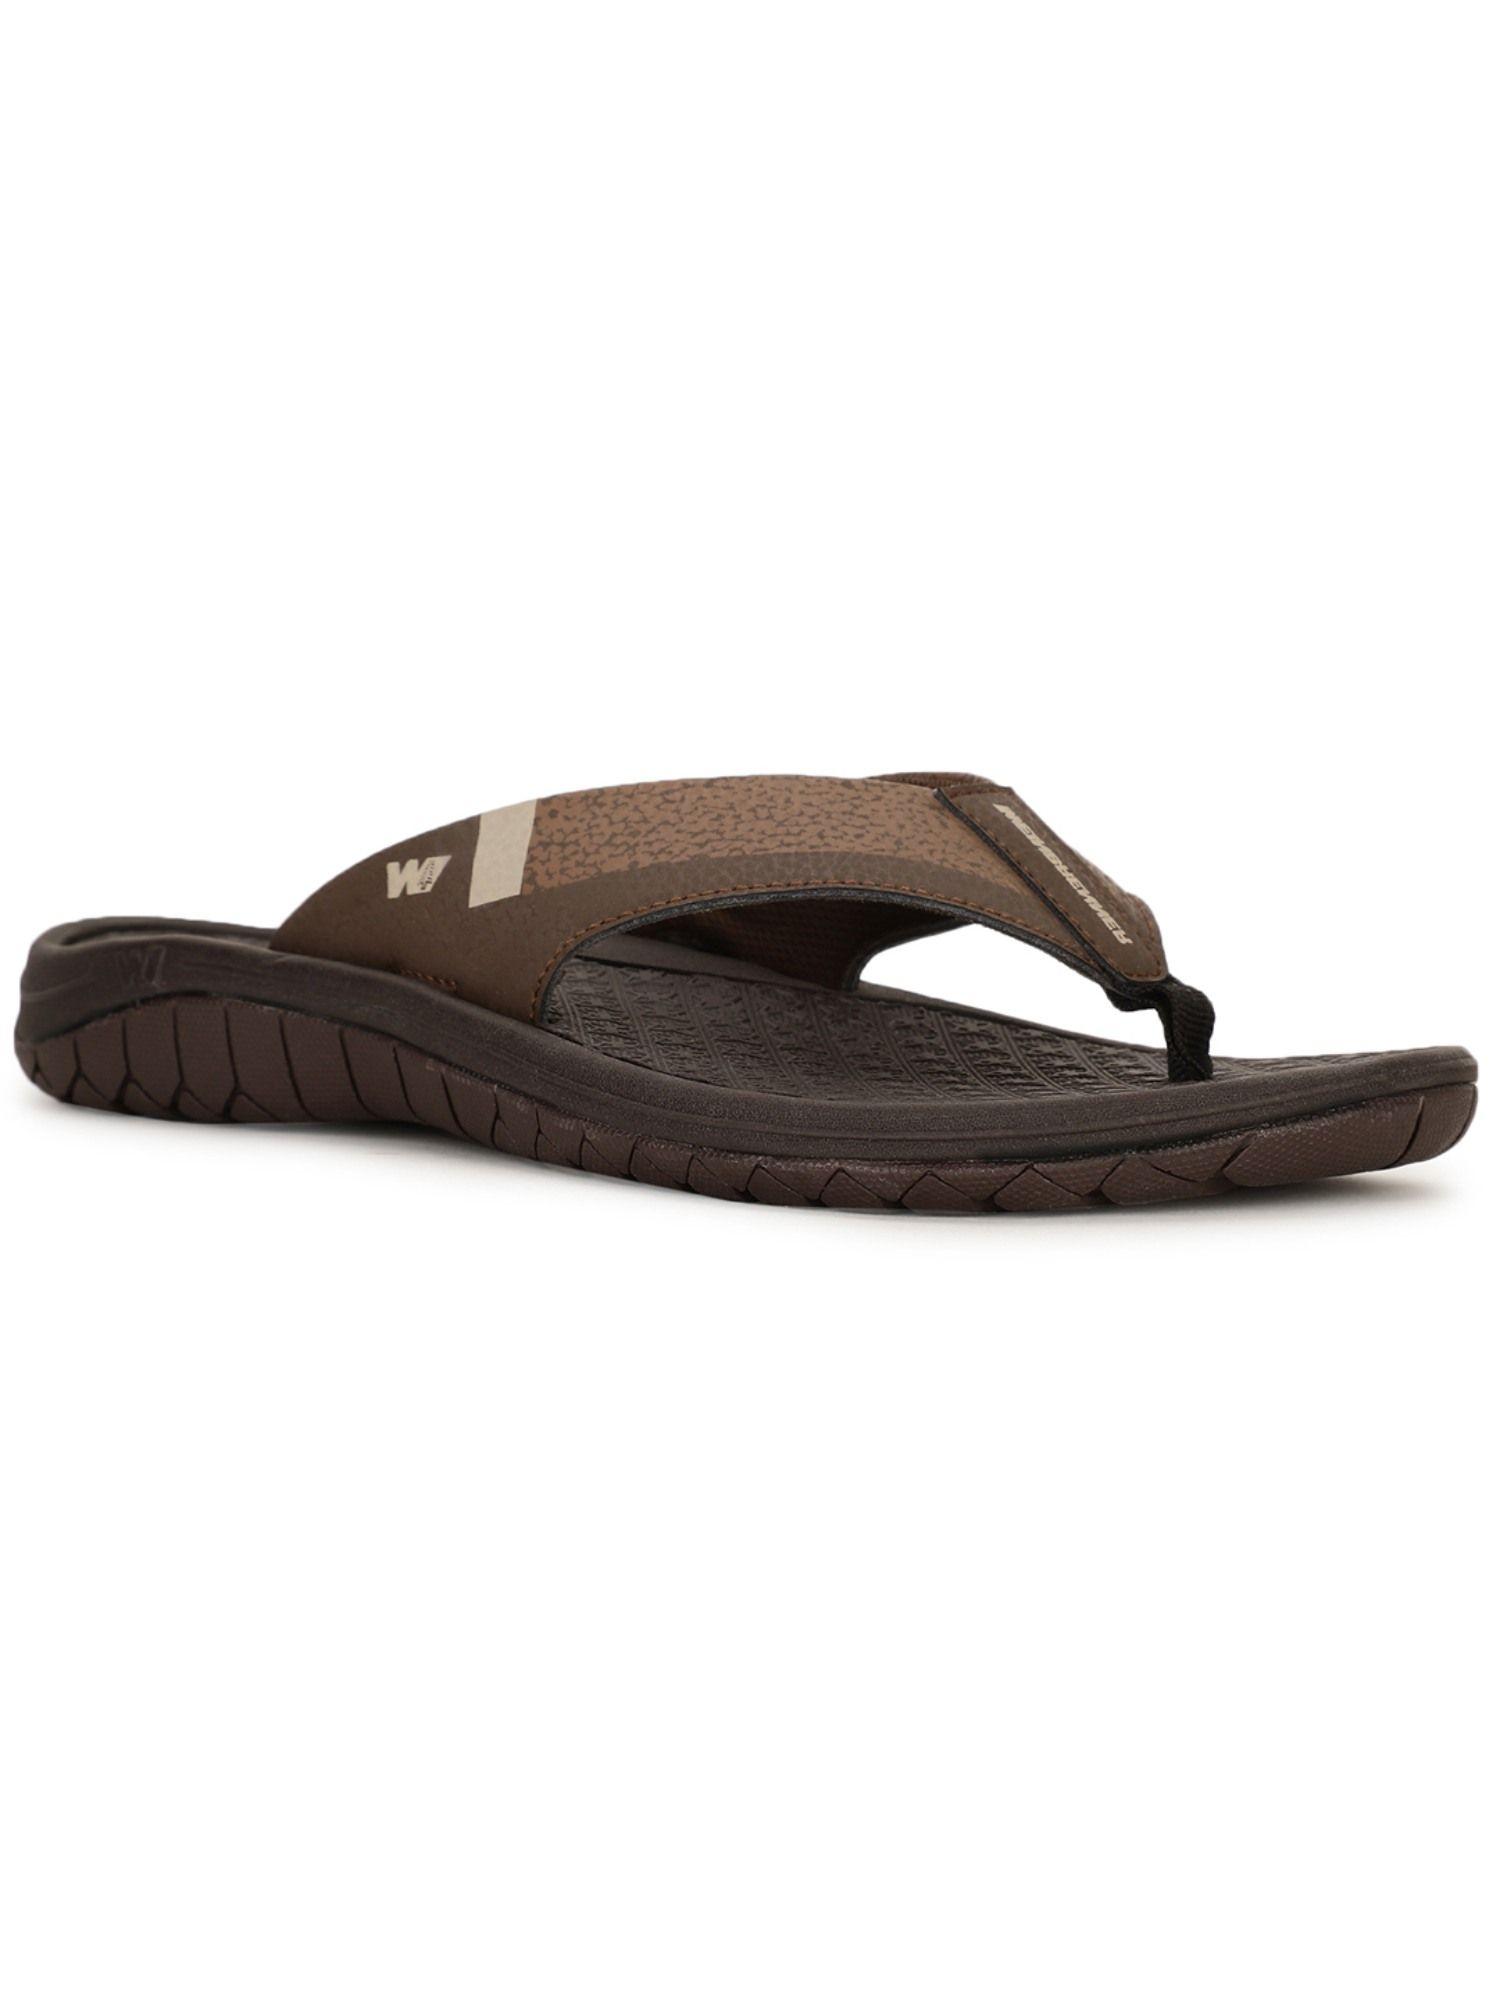 brown sandals for men